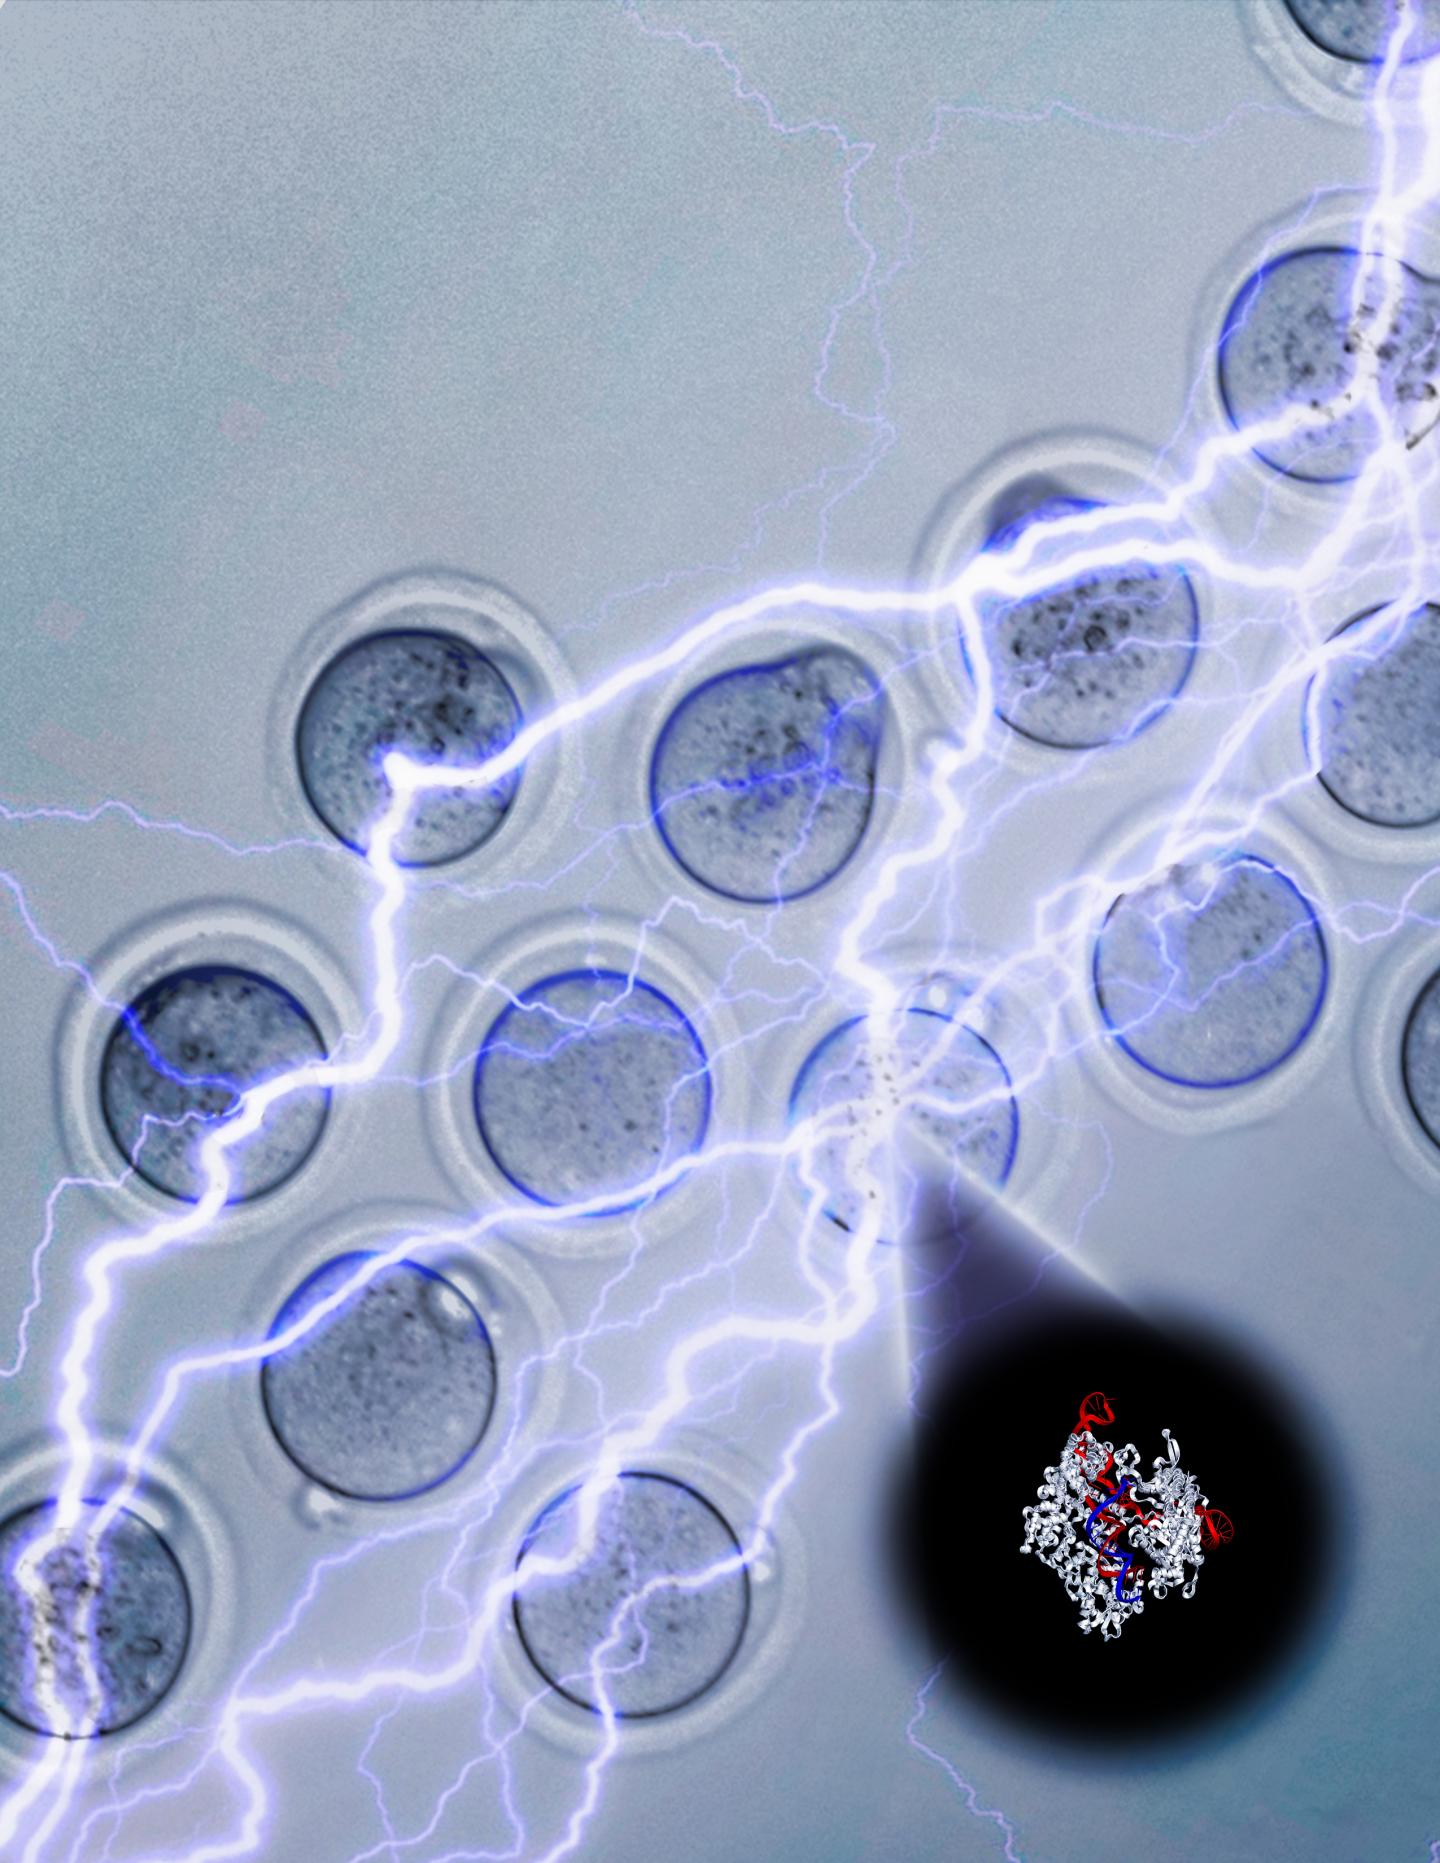 Electroporation Efficiently Drives CRISPR-Cas9 Into Embryos